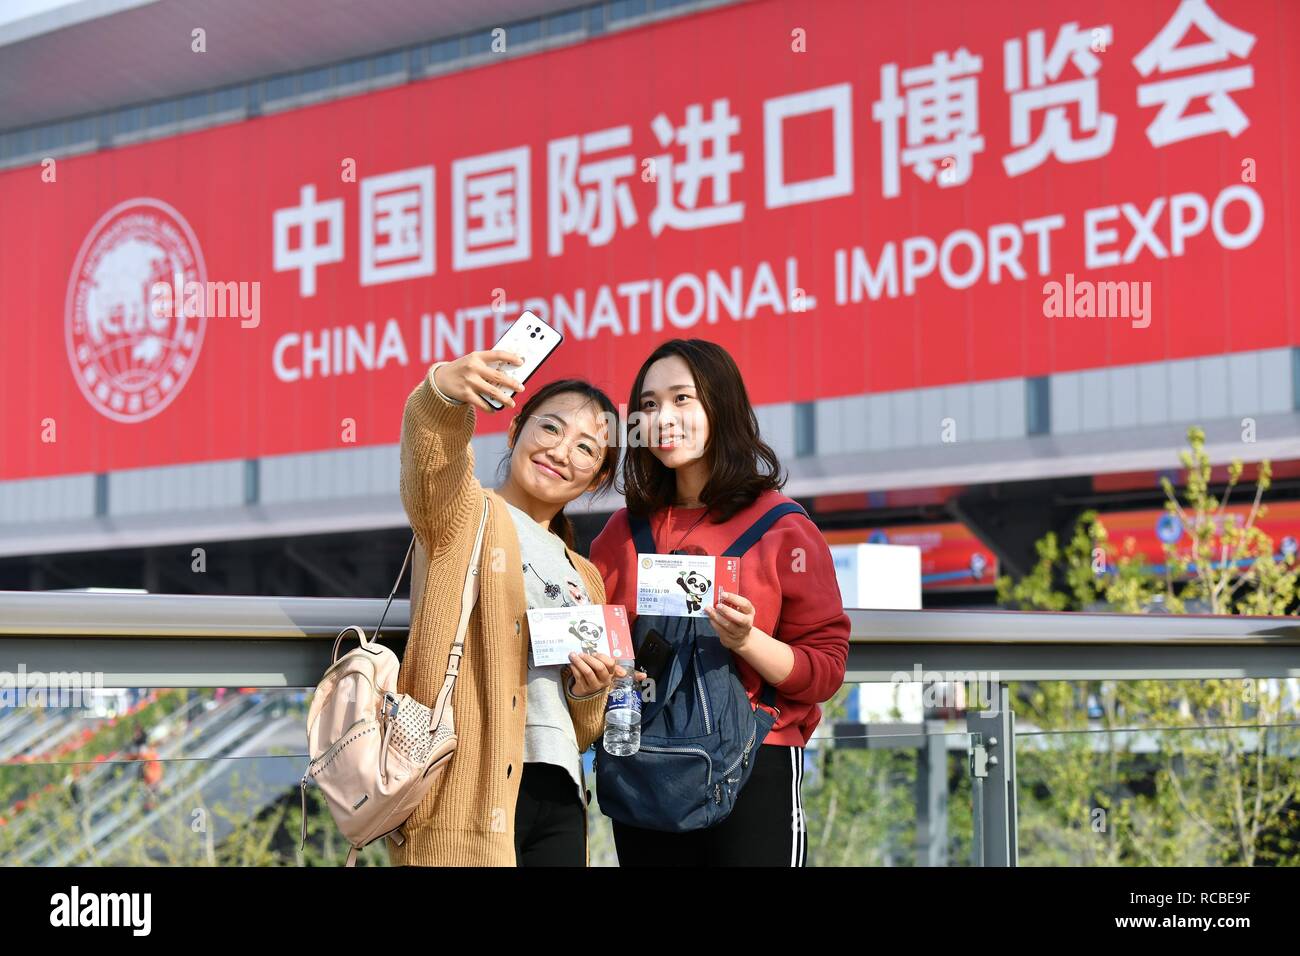 (190115) -- PECHINO, Gennaio 15, 2019 (Xinhua) - Visitatori Chen Fei (L) e Weng Jingyi comportano per le foto di fronte alla sede del primo China International Import Expo (CIIE) a Shanghai in Cina orientale, nov. 9, 2018. Il commercio estero cinese è salito del 9,7 per cento anno su anno per un massimo storico di 30.51 mille miliardi di yuan (circa 4,5 trilioni di dollari USA) nel 2018, l'amministrazione generale delle dogane (GAC) detto lunedì. Le esportazioni sono aumentate 7.1 per cento anno su anno di 16,42 miliardi di yuan lo scorso anno, mentre le importazioni sono aumentate del 12,9% a 14.9 miliardi di yuan, risultante in un surplus commerciale di 2,33 miliardi di yuan, whic Foto Stock